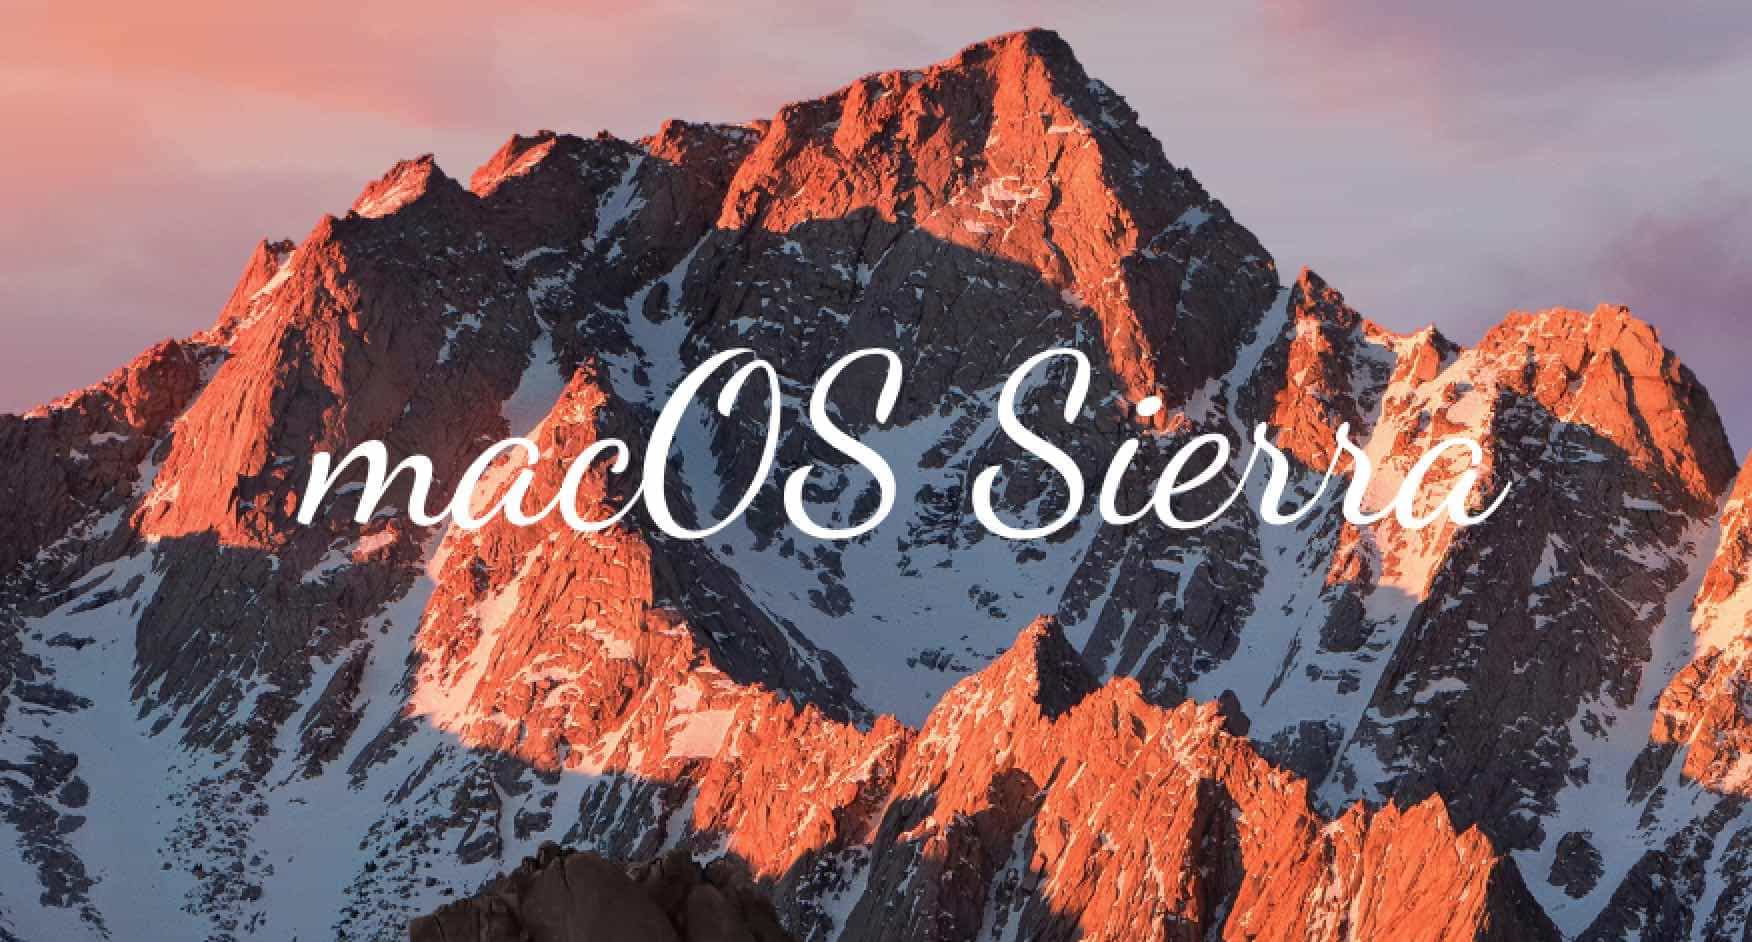 install macOS Sierra